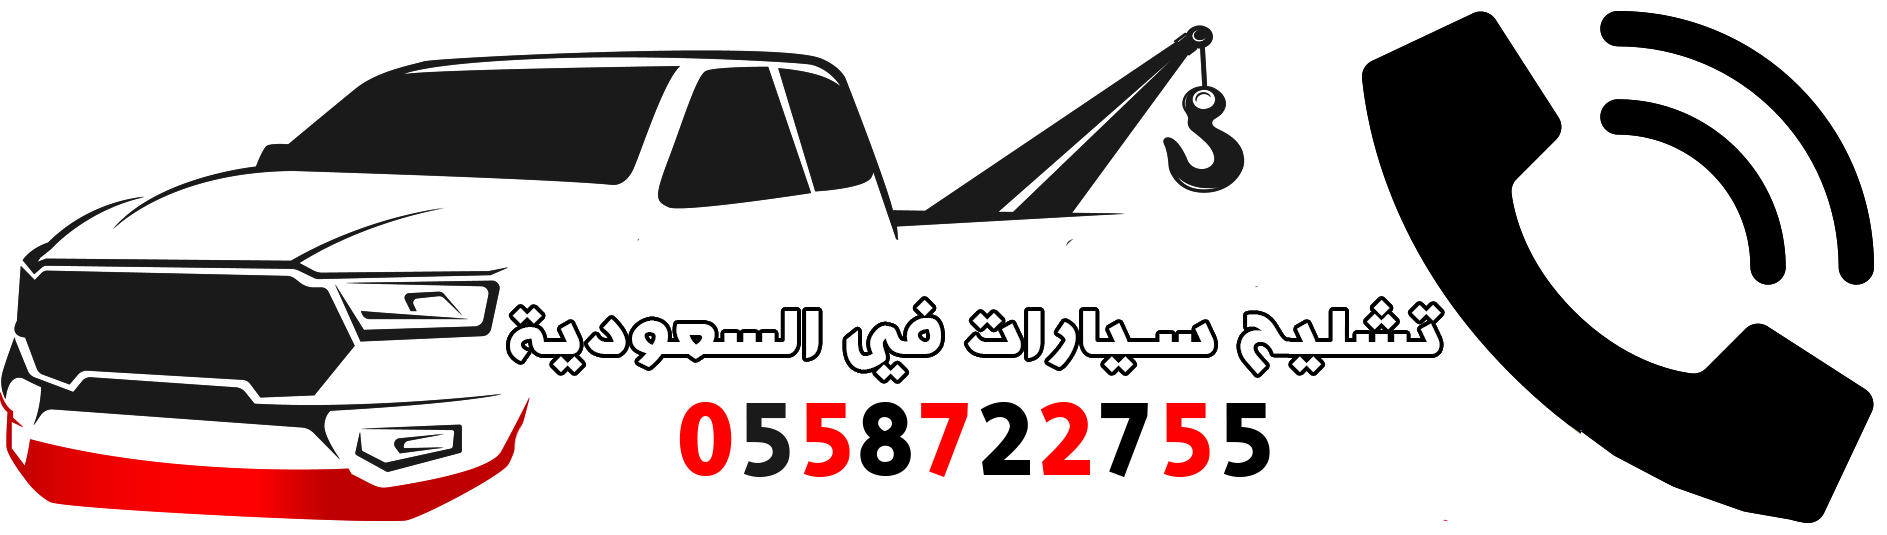 تشليح سيارات في السعودية 0537132395 